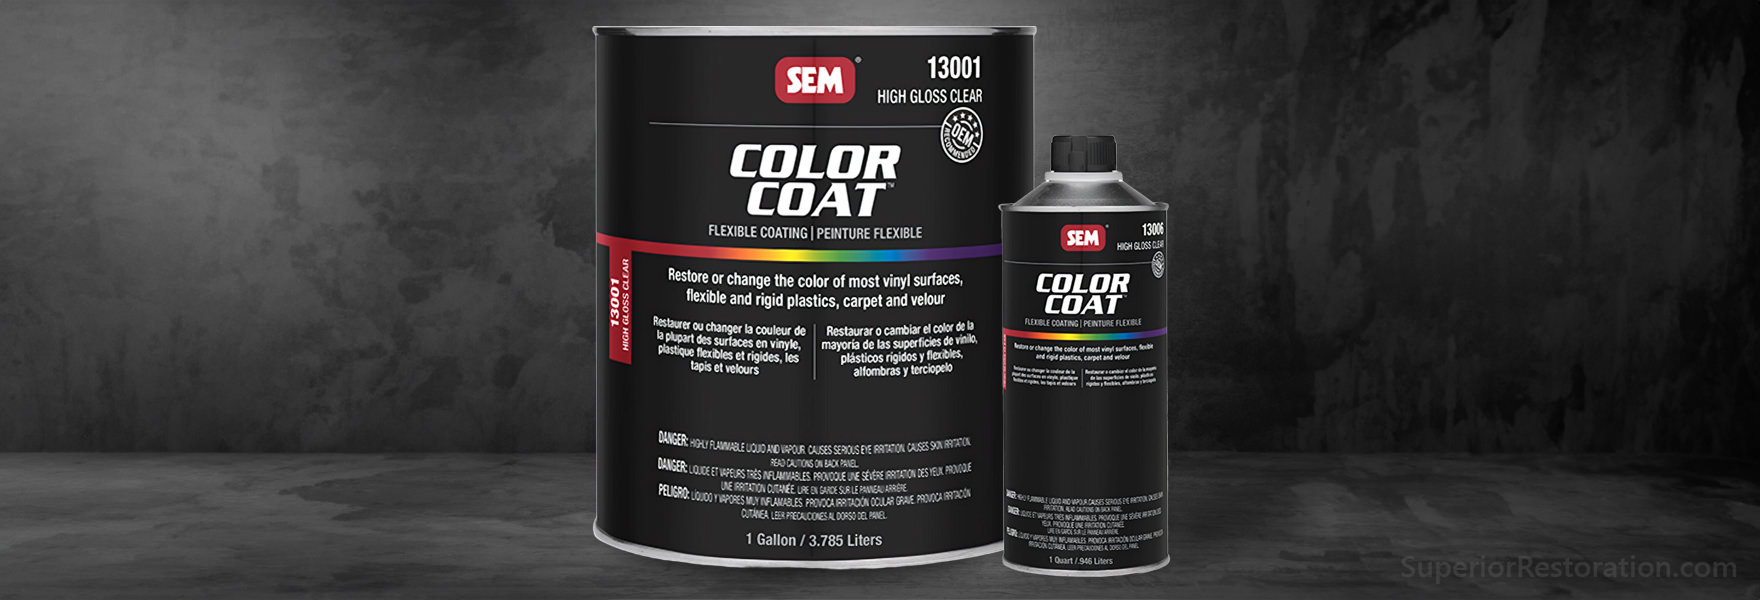 SEM Color Coat Mixing System